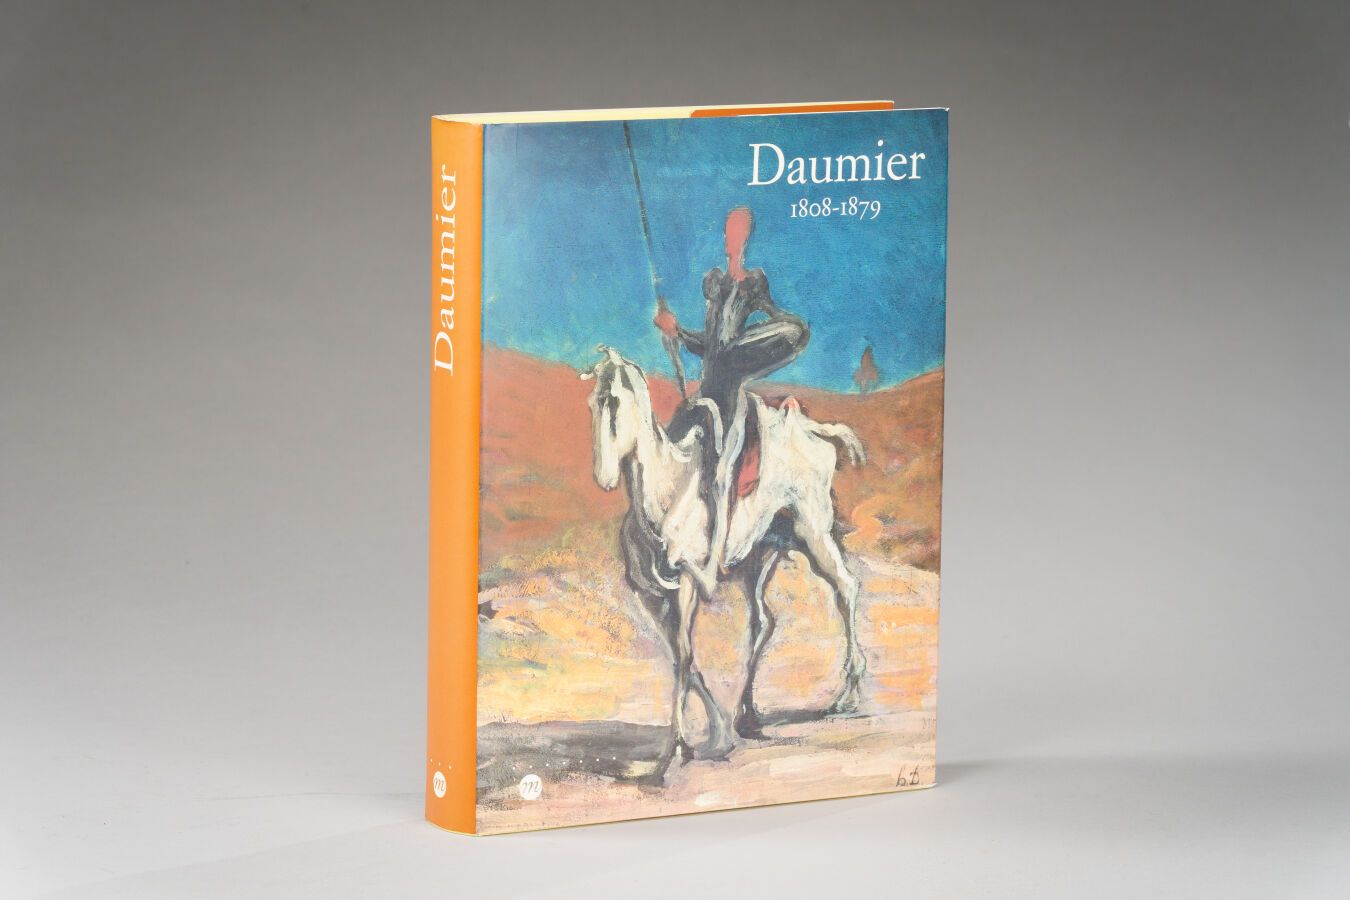 Null 5. DAUMIER, 1808-1879, Reunión de los Museos

Nationaux, París 1999, 1 vol.